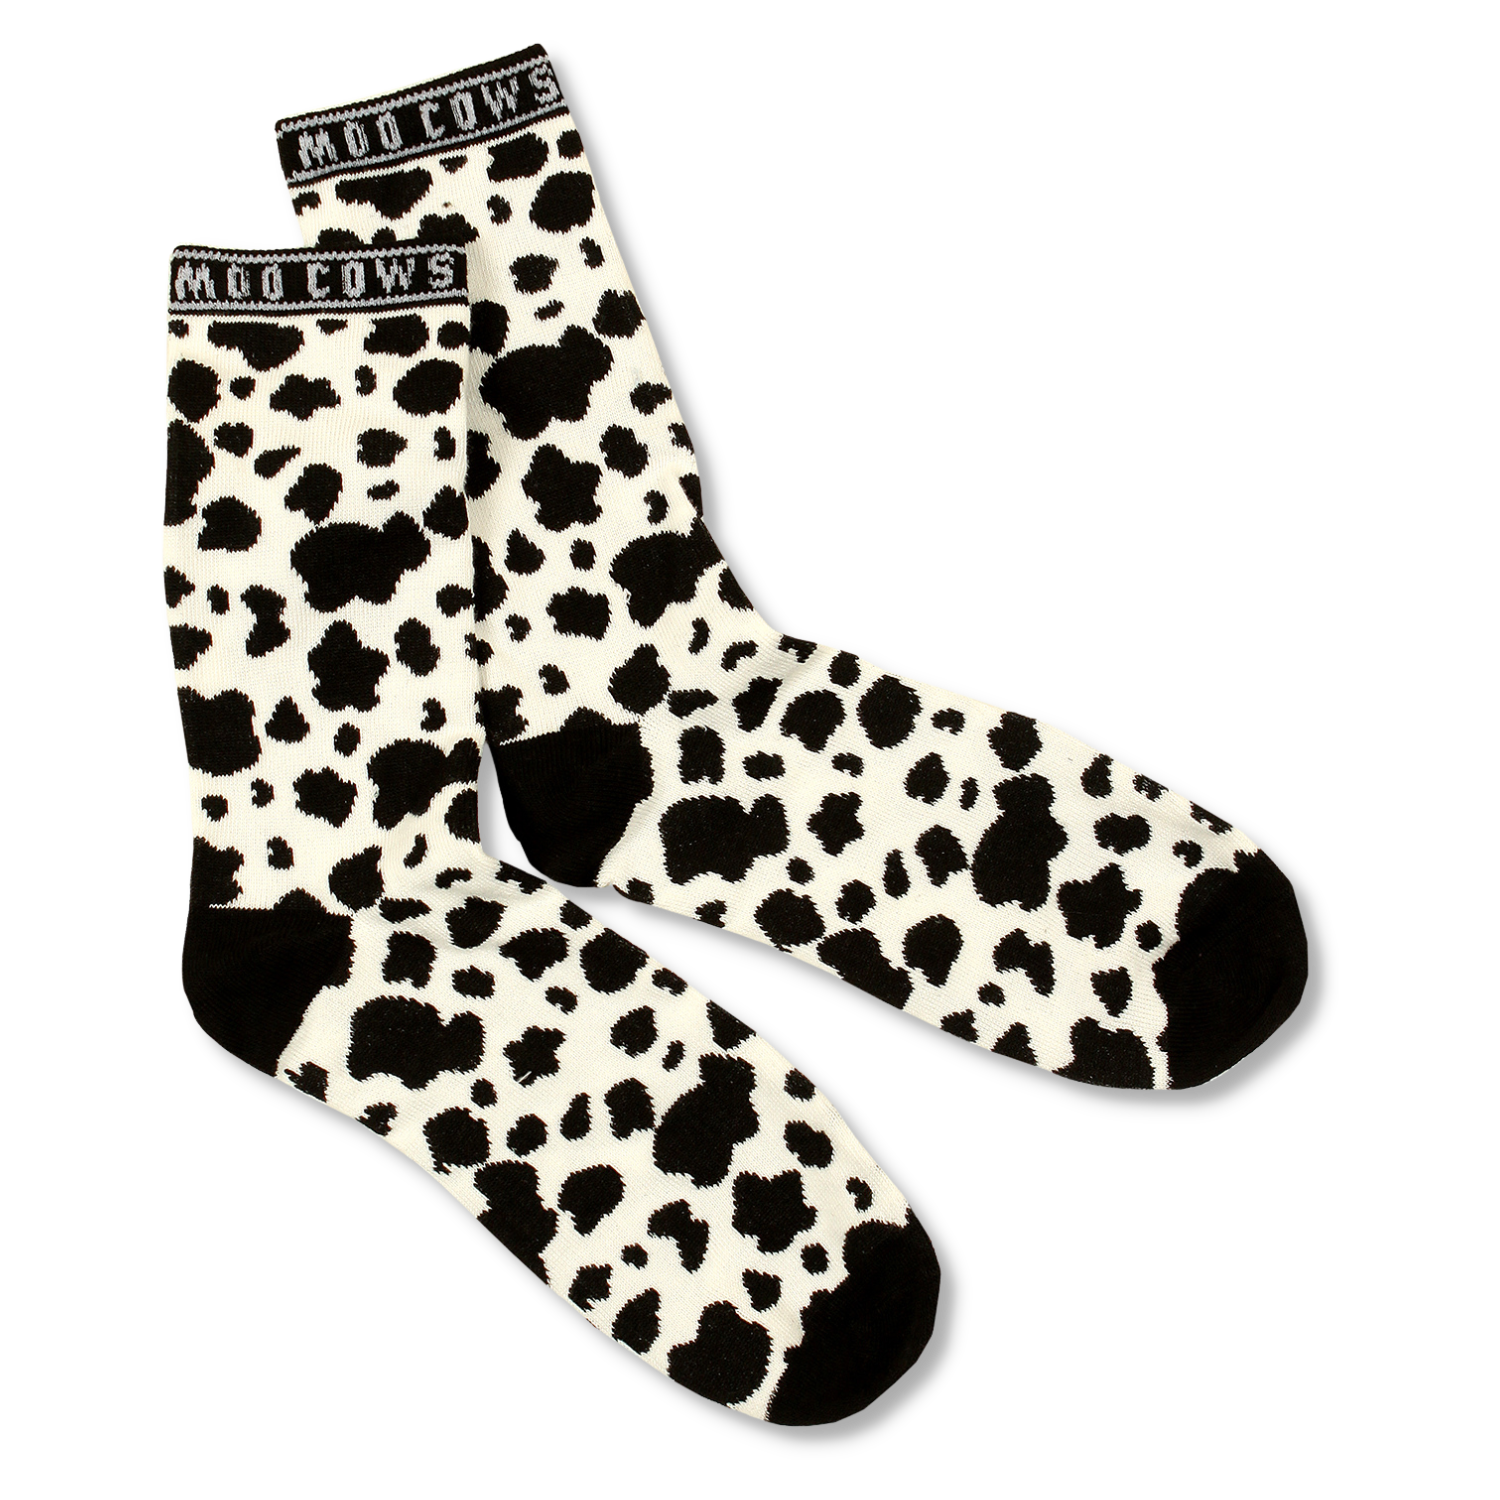 COWS Adult Socks - Spots